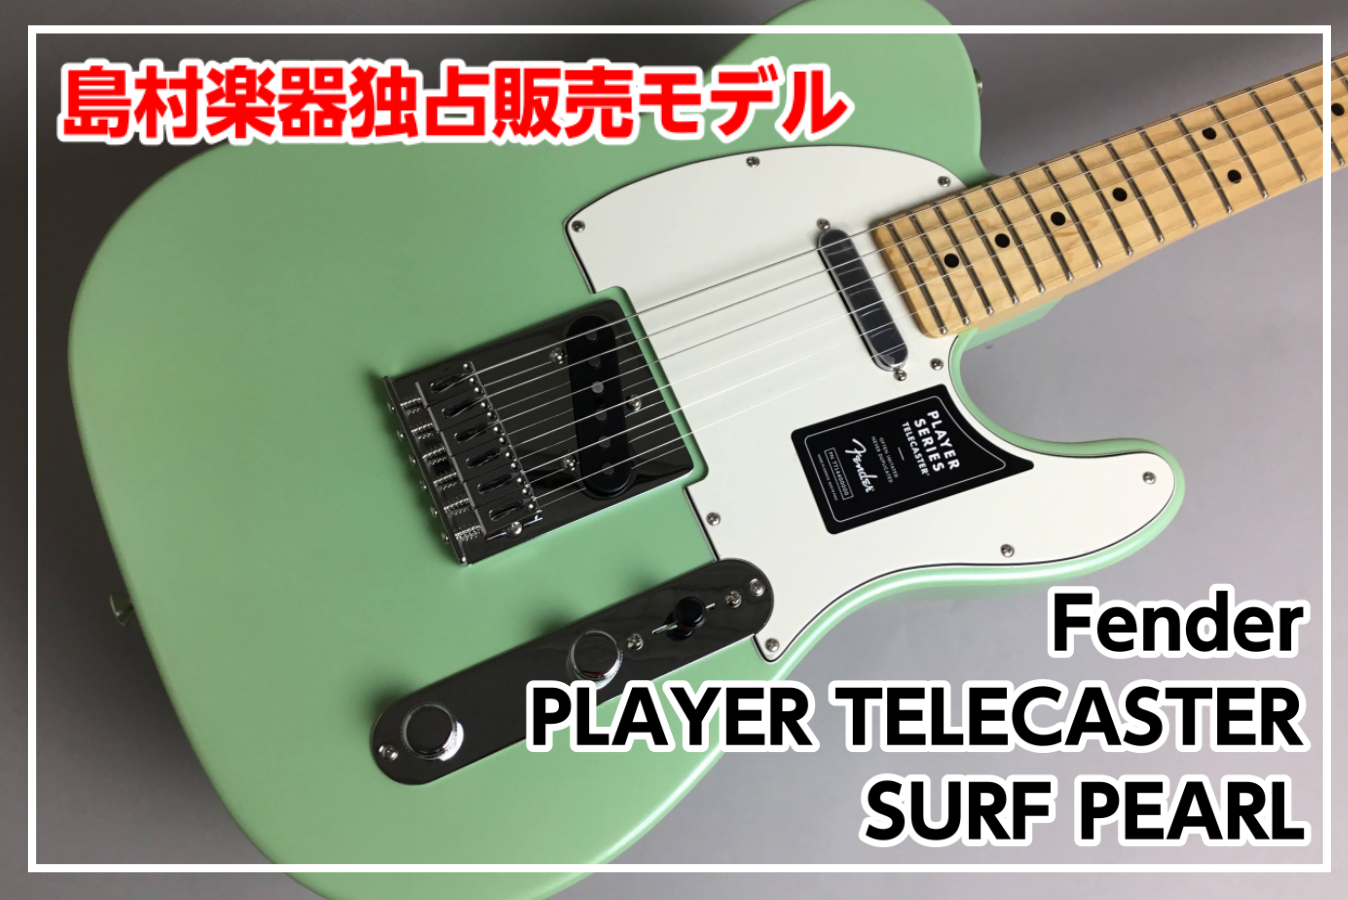 【国内未発売モデル】Fender PLAYER TELECASTER SURF PEARL (SFP)島村楽器独占販売！